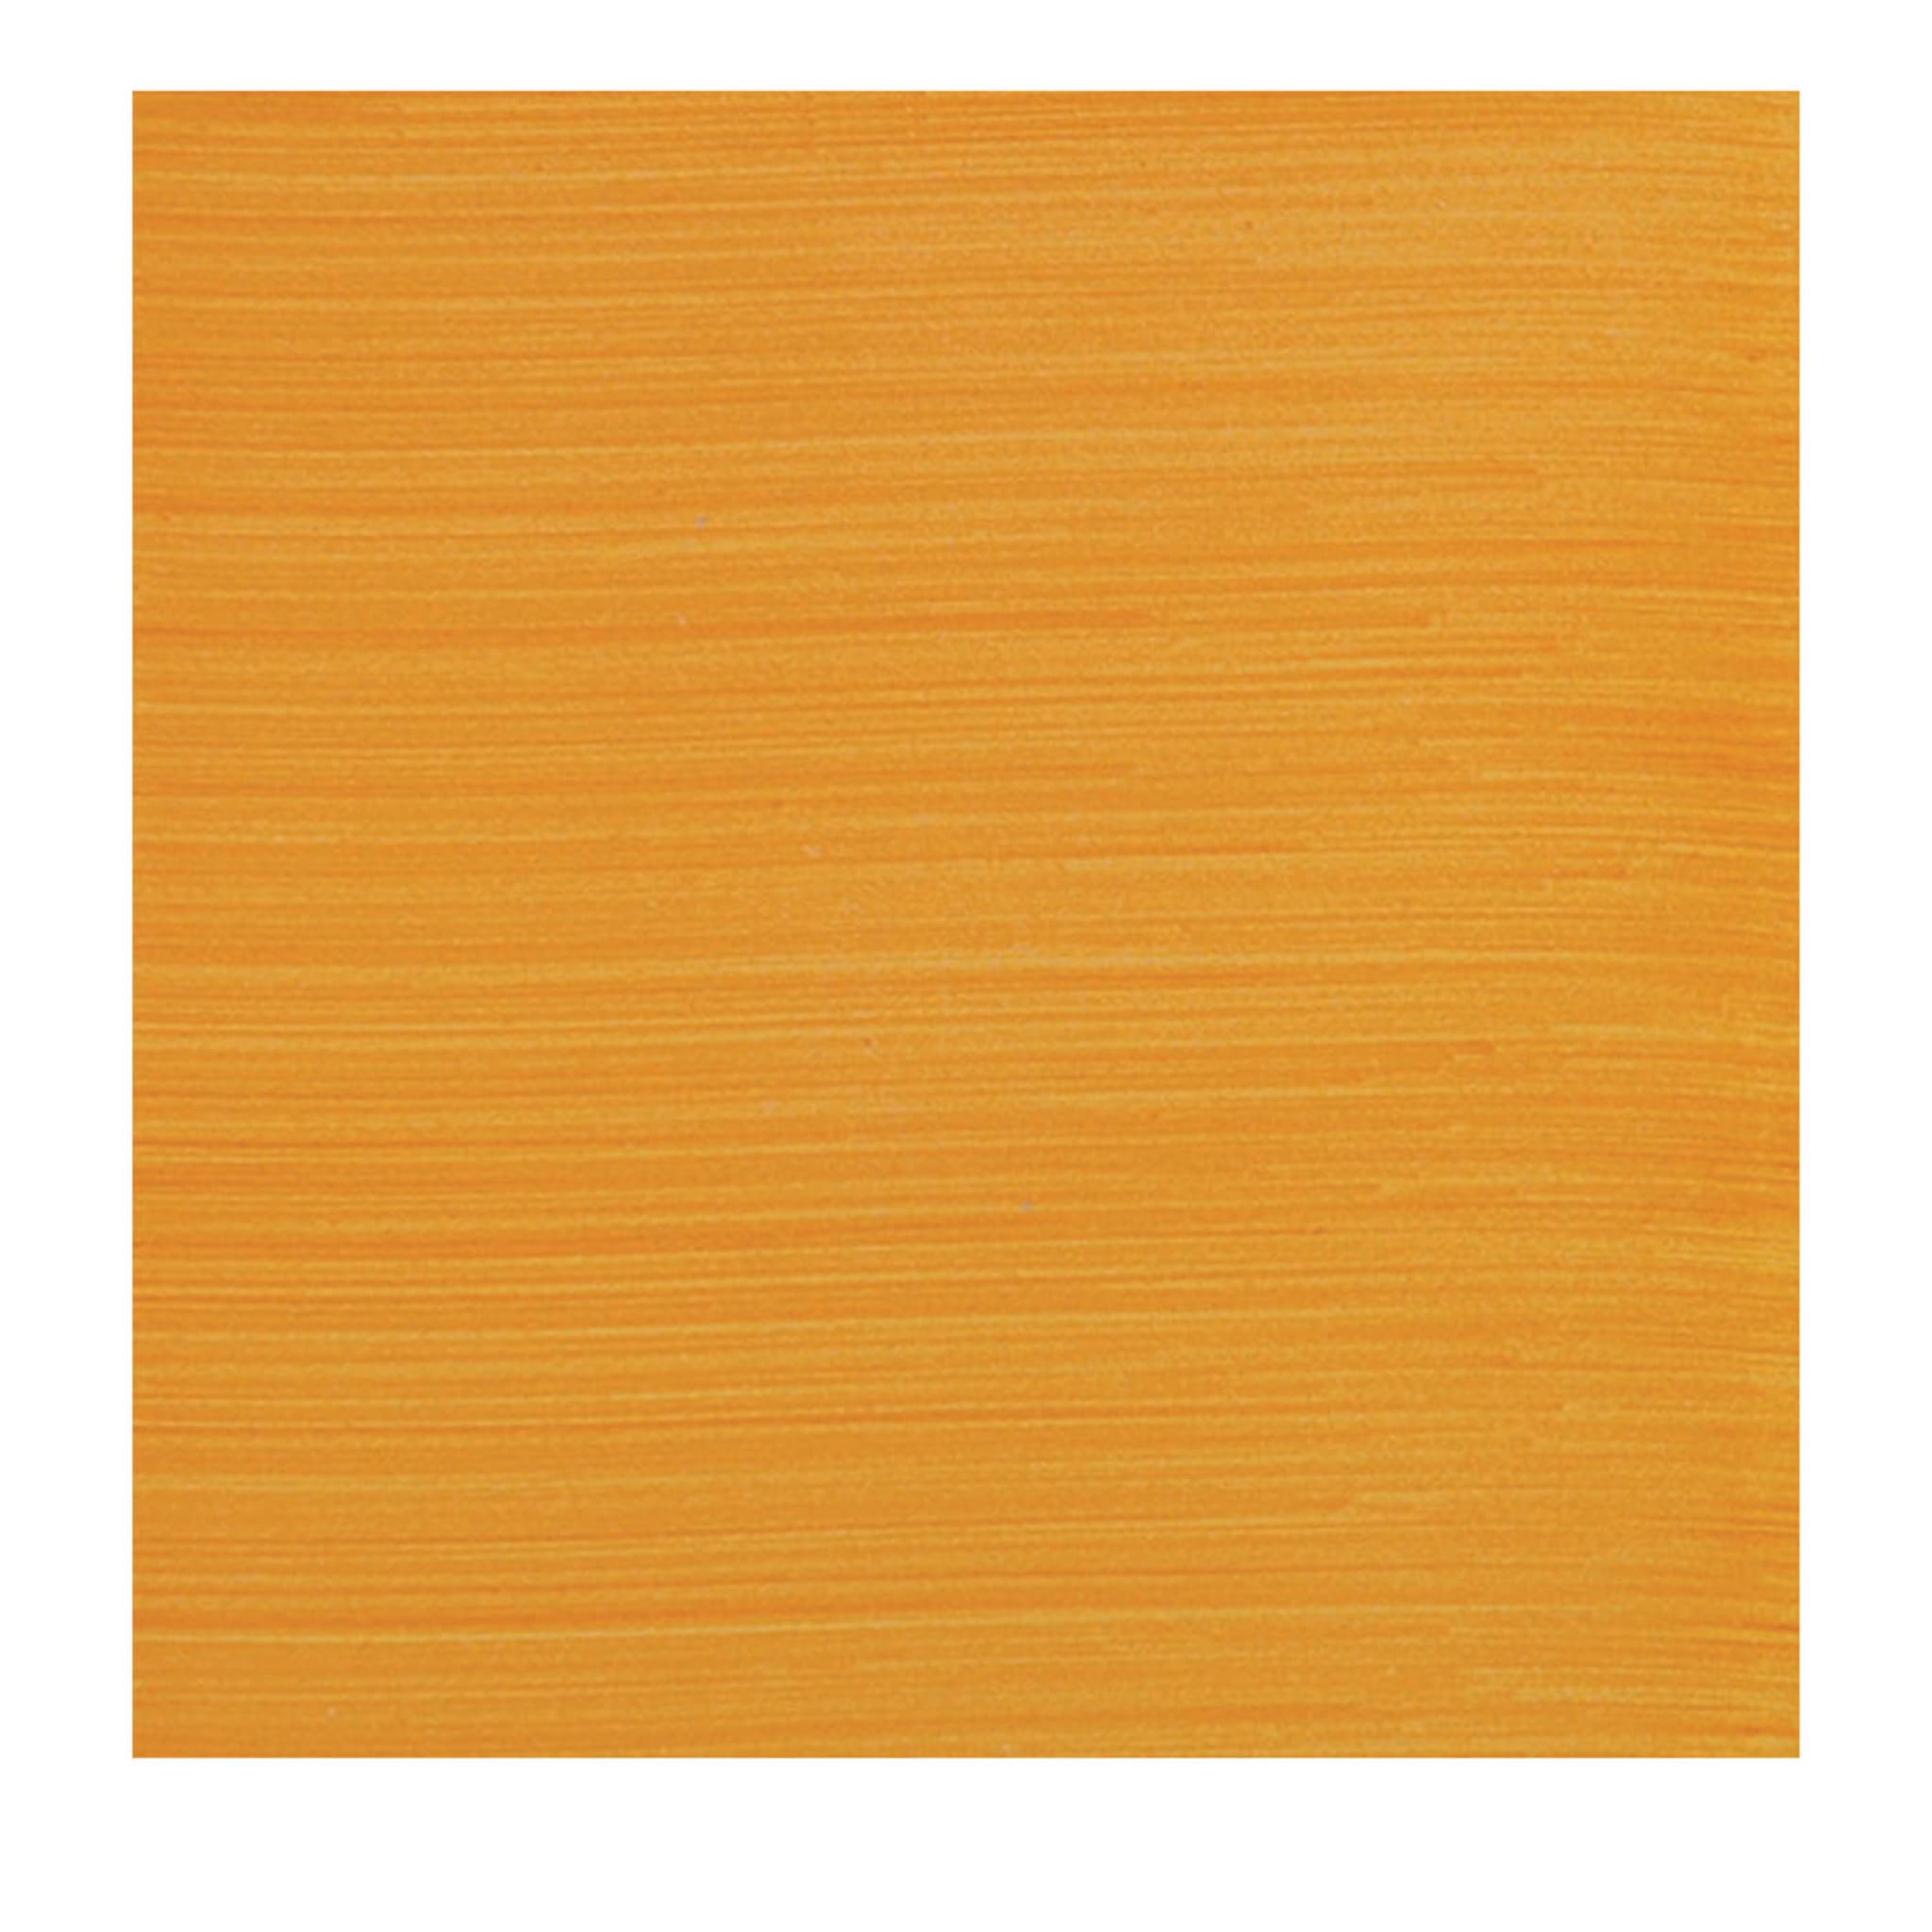 Cromie Color C40 Lot de 25 carreaux carrés - Vue principale